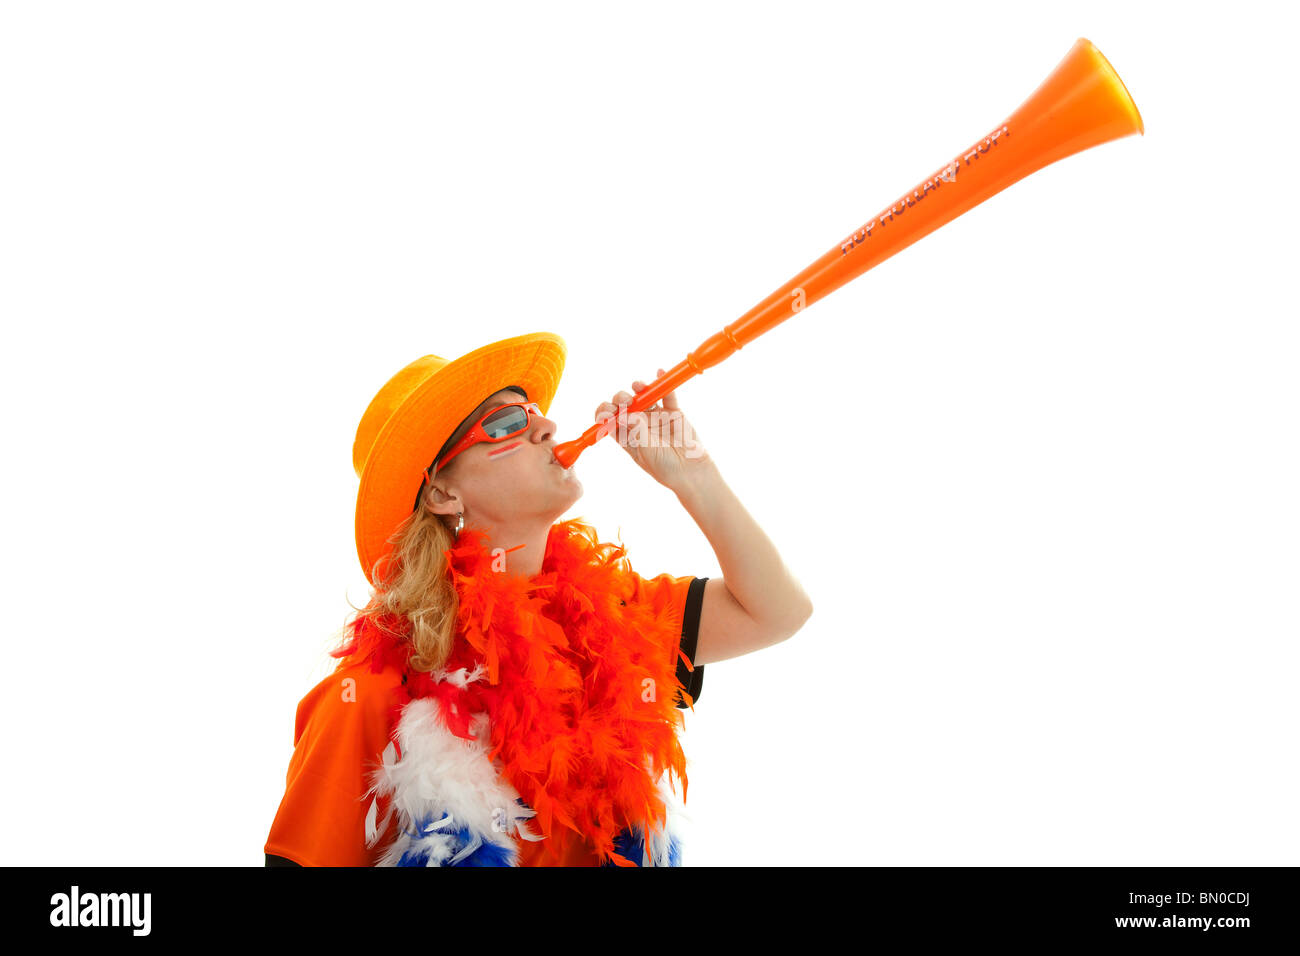 Weibliche niederländische Fußball-Anhänger mit orange Kunststoff Vuvuzela auf weißem Hintergrund Stockfoto